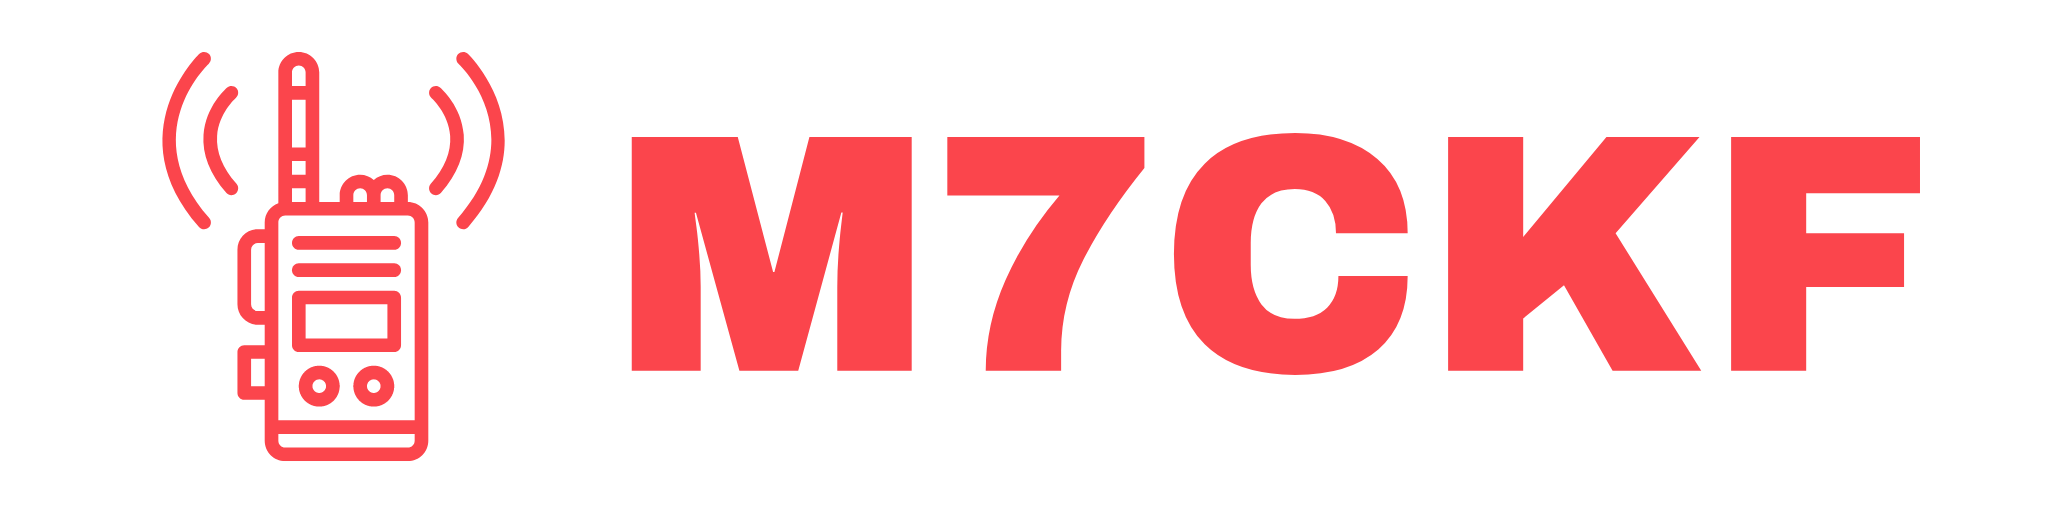 M7CKF